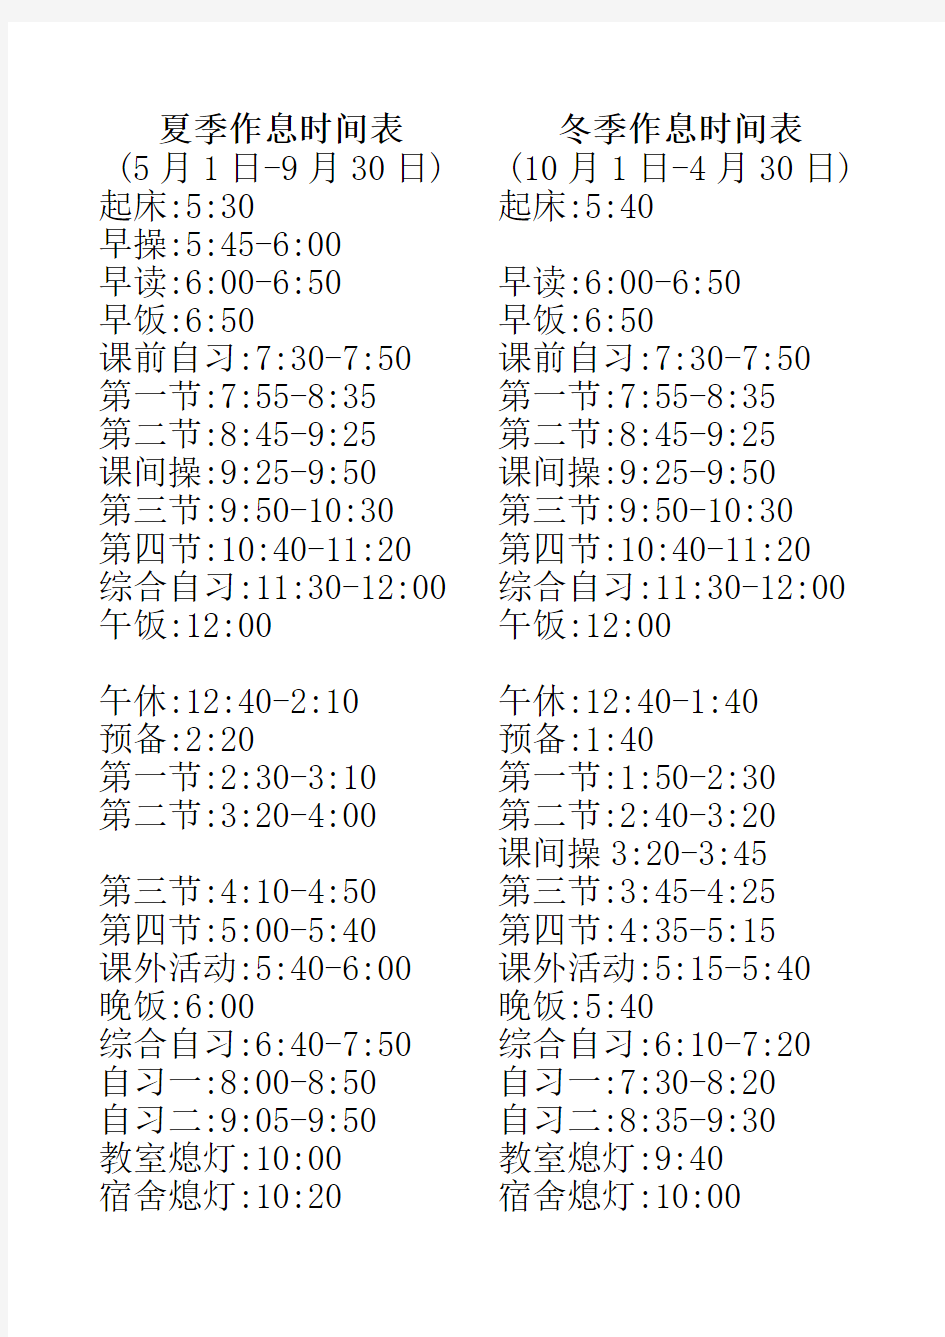 九中作息时间表(新2014-8-20)